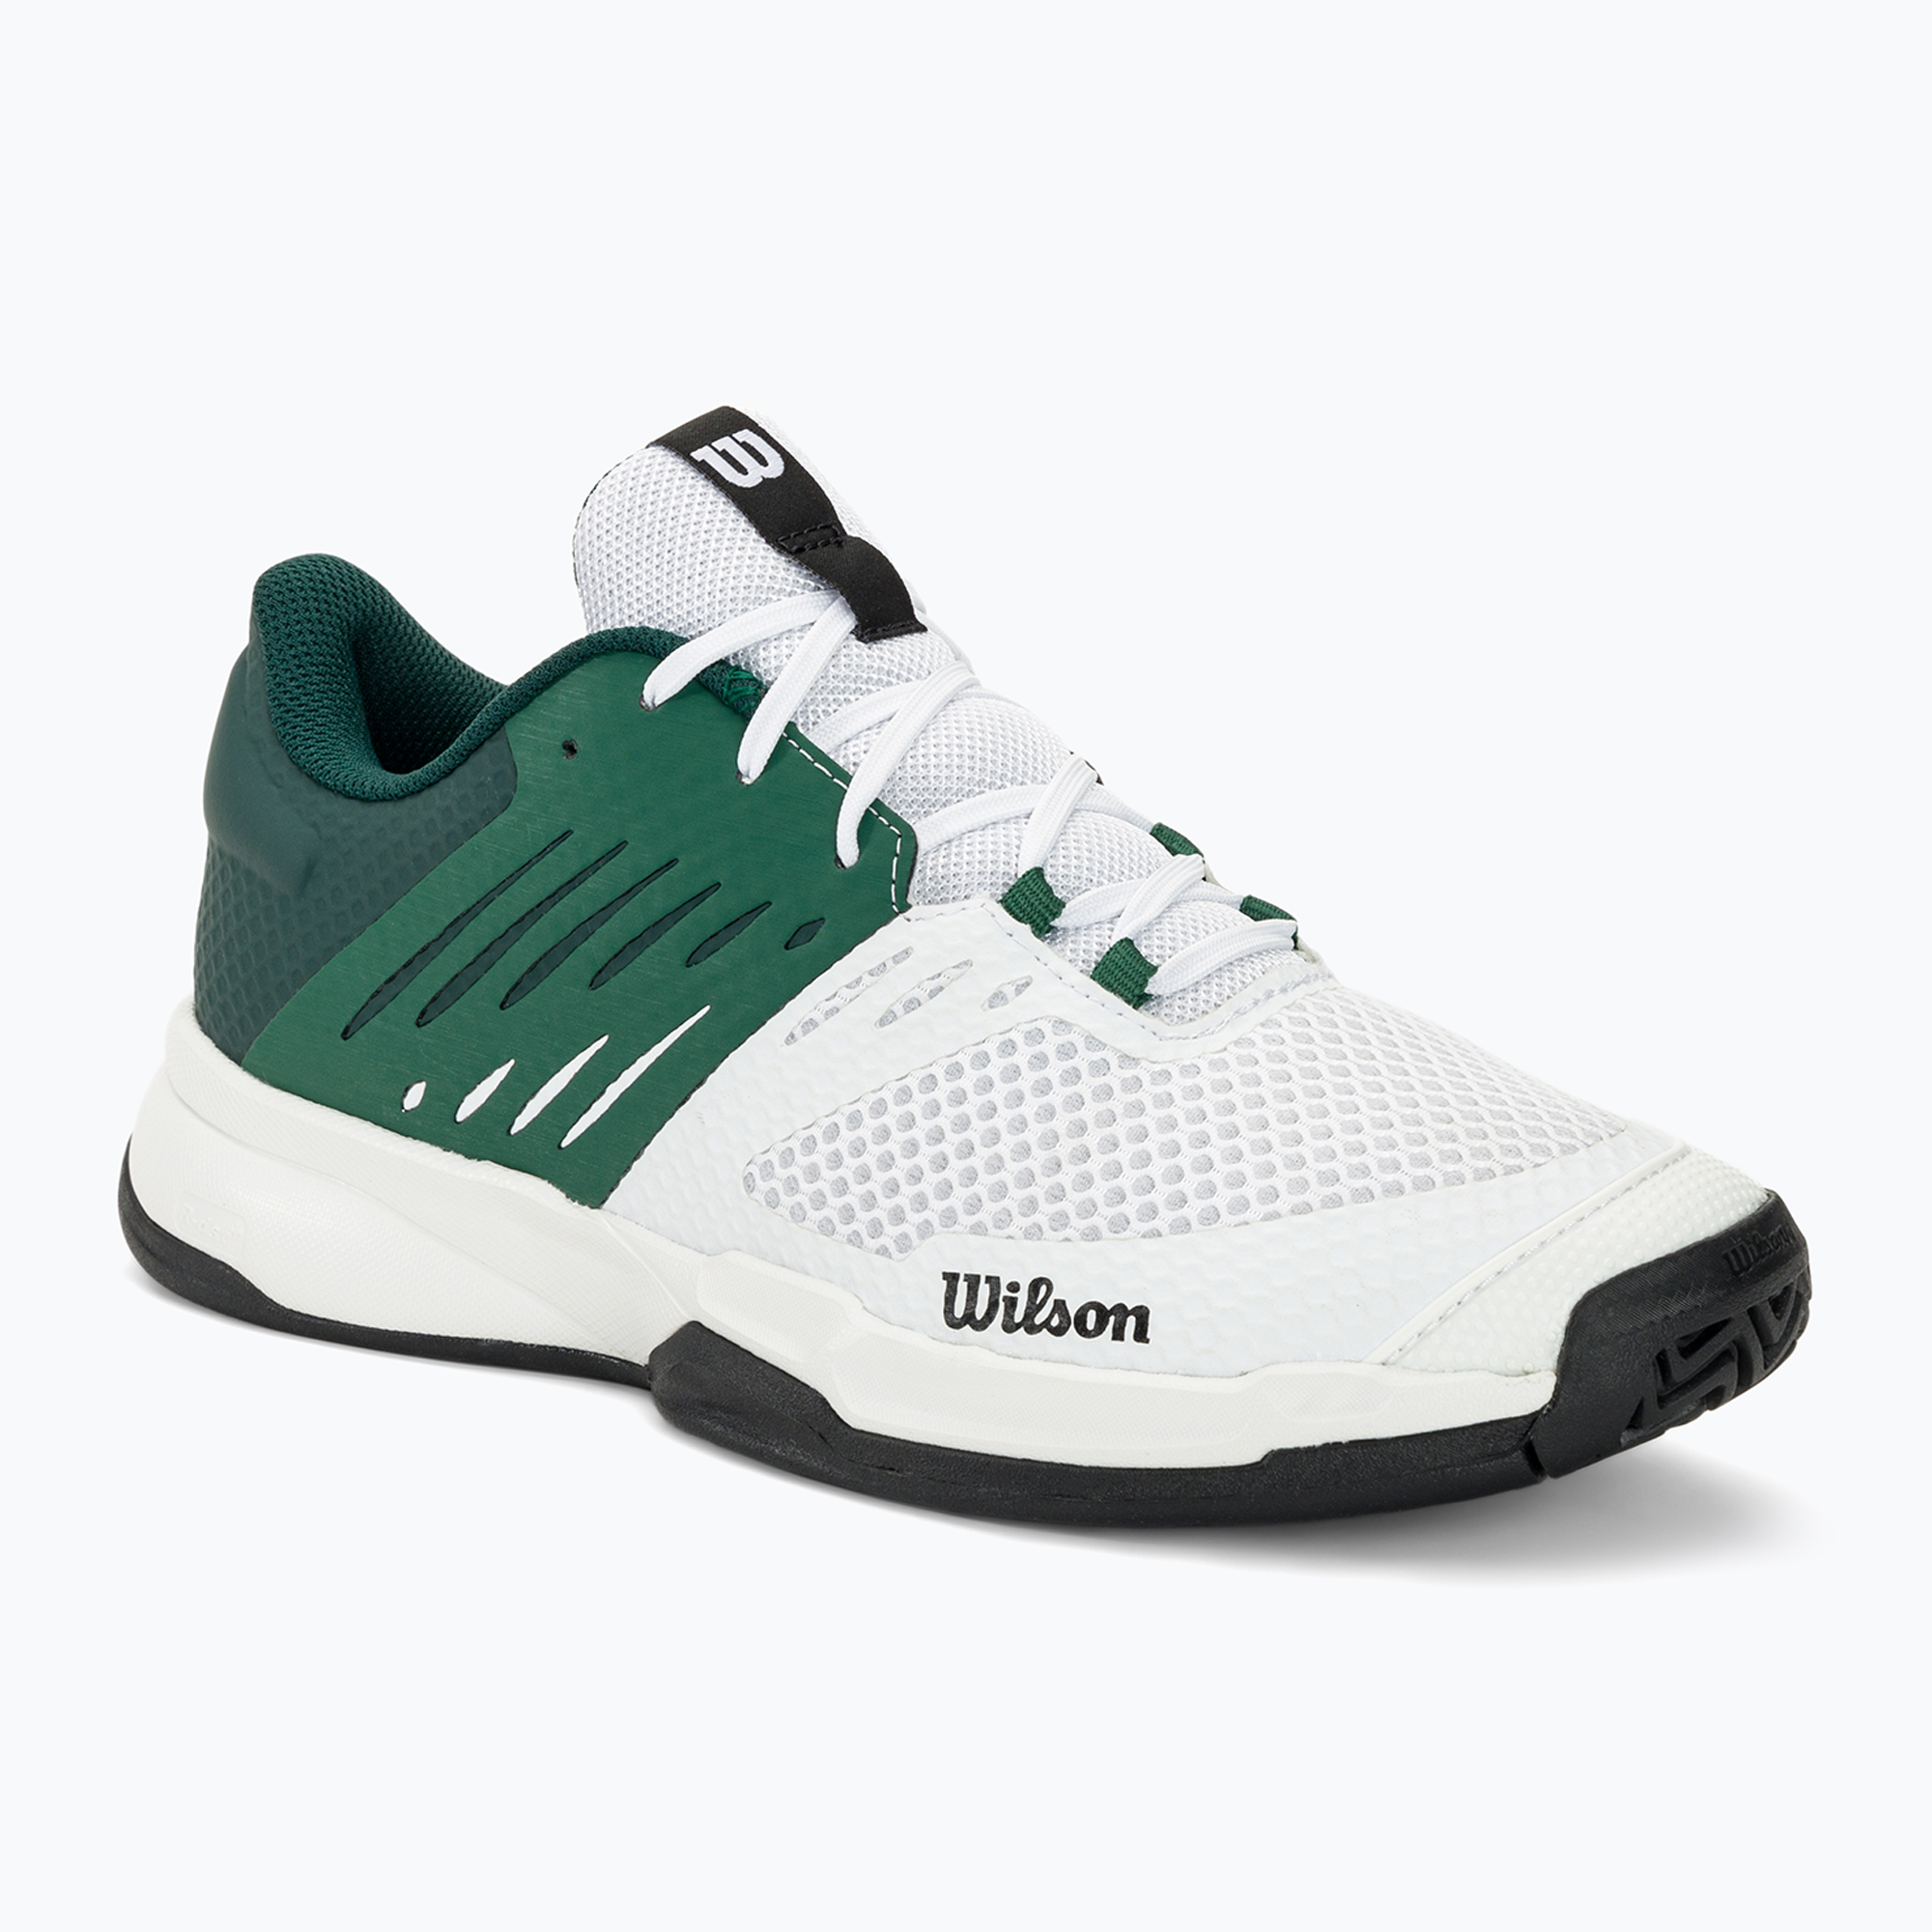 Pánska tenisová obuv Wilson Kaos Devo 2.0 white/evergreen